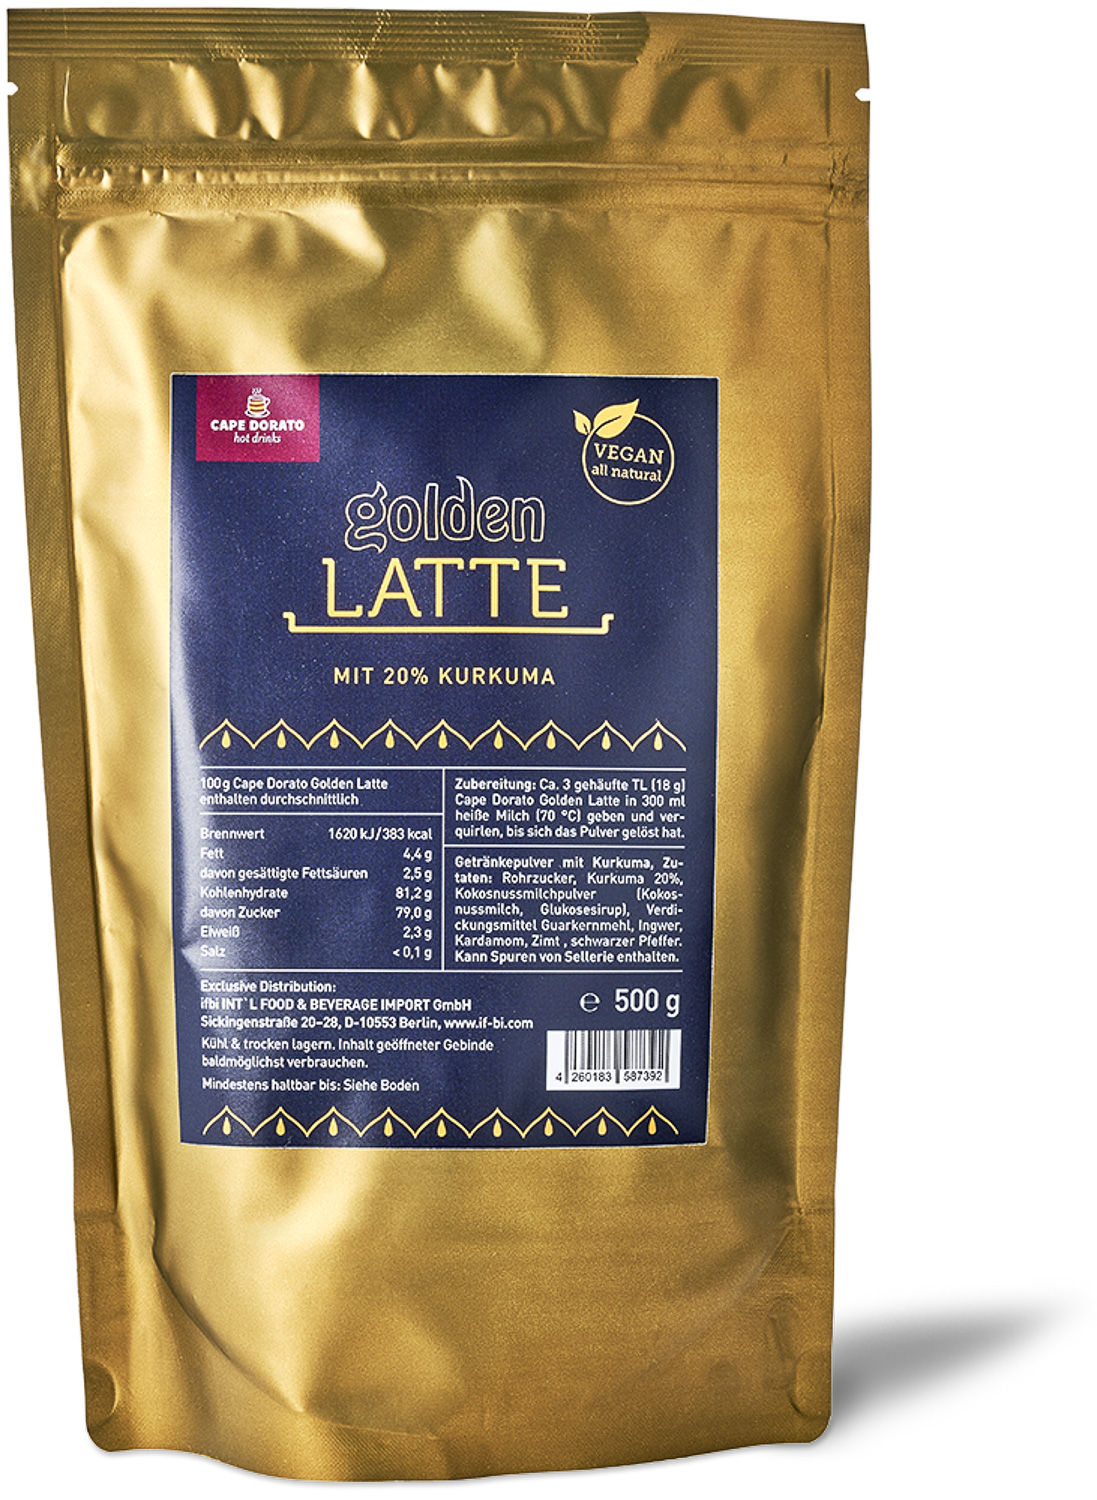 Cape Dorato - Golden Latte